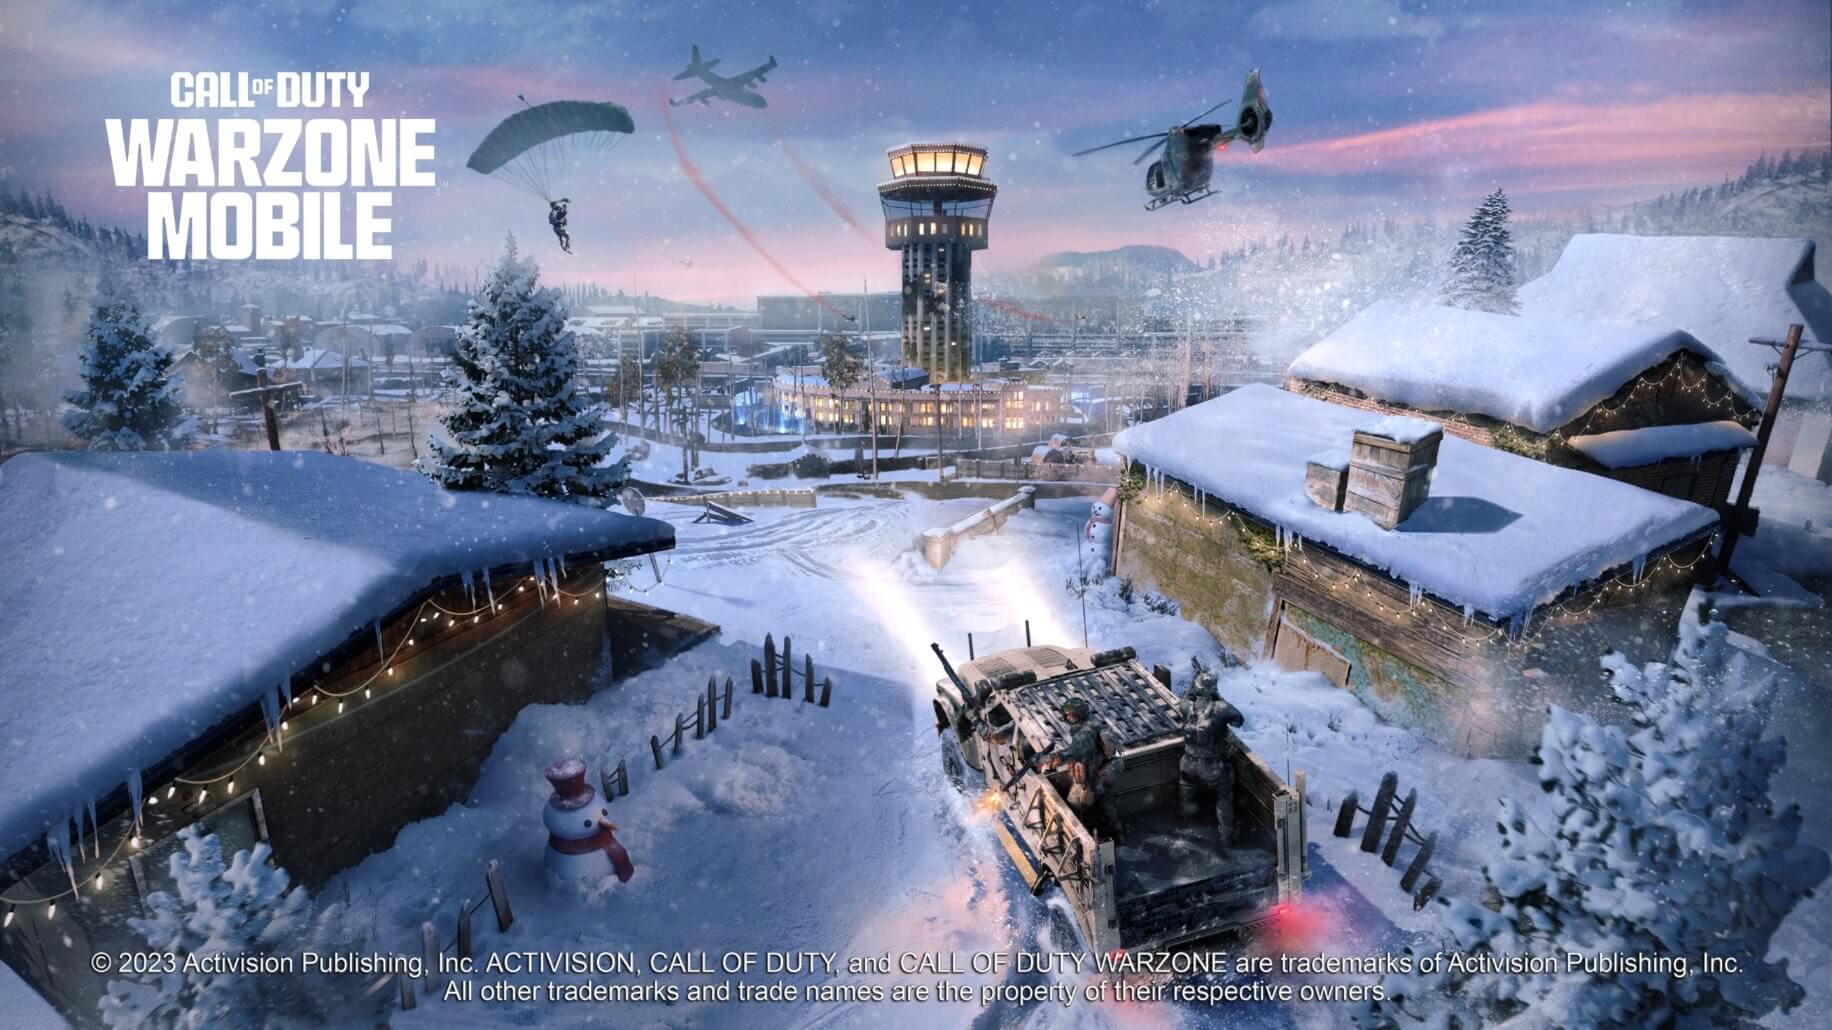 Imagem oficial do jogo Call of Duty: Warzone Mobile, com mapa conhecido do game.